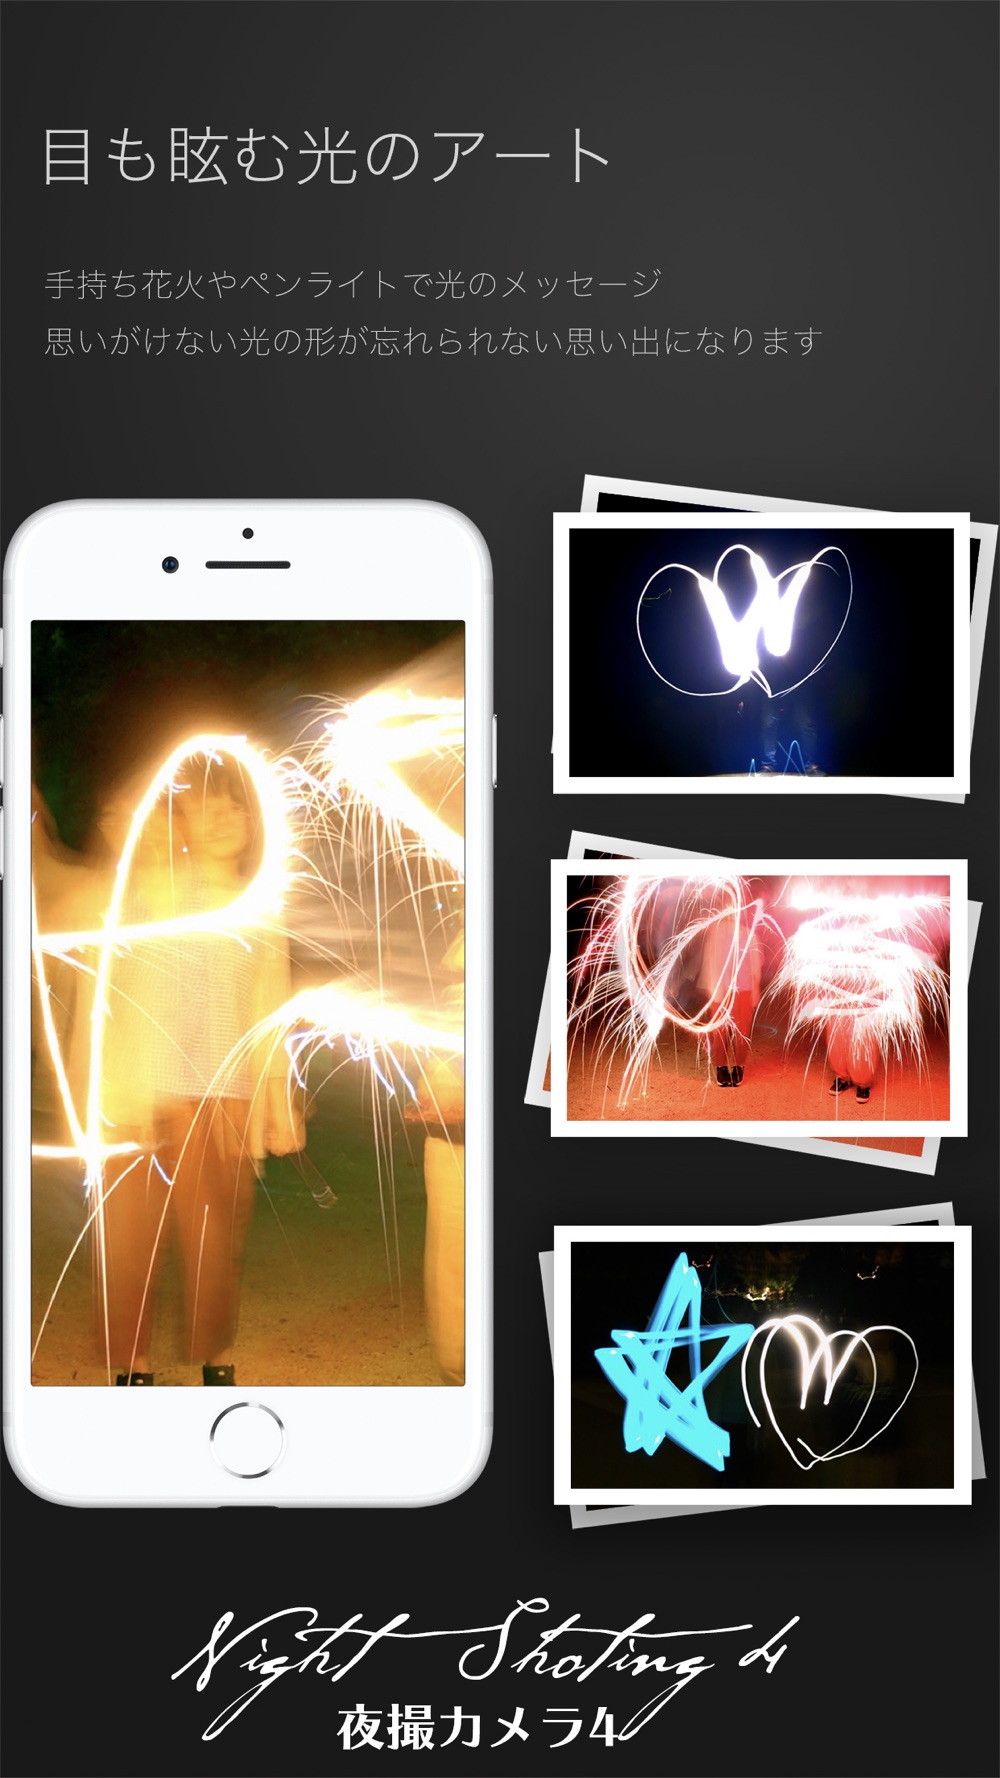 夜撮カメラ 夜景 夜空に最高のカメラアプリ Free Download App For Iphone Steprimo Com